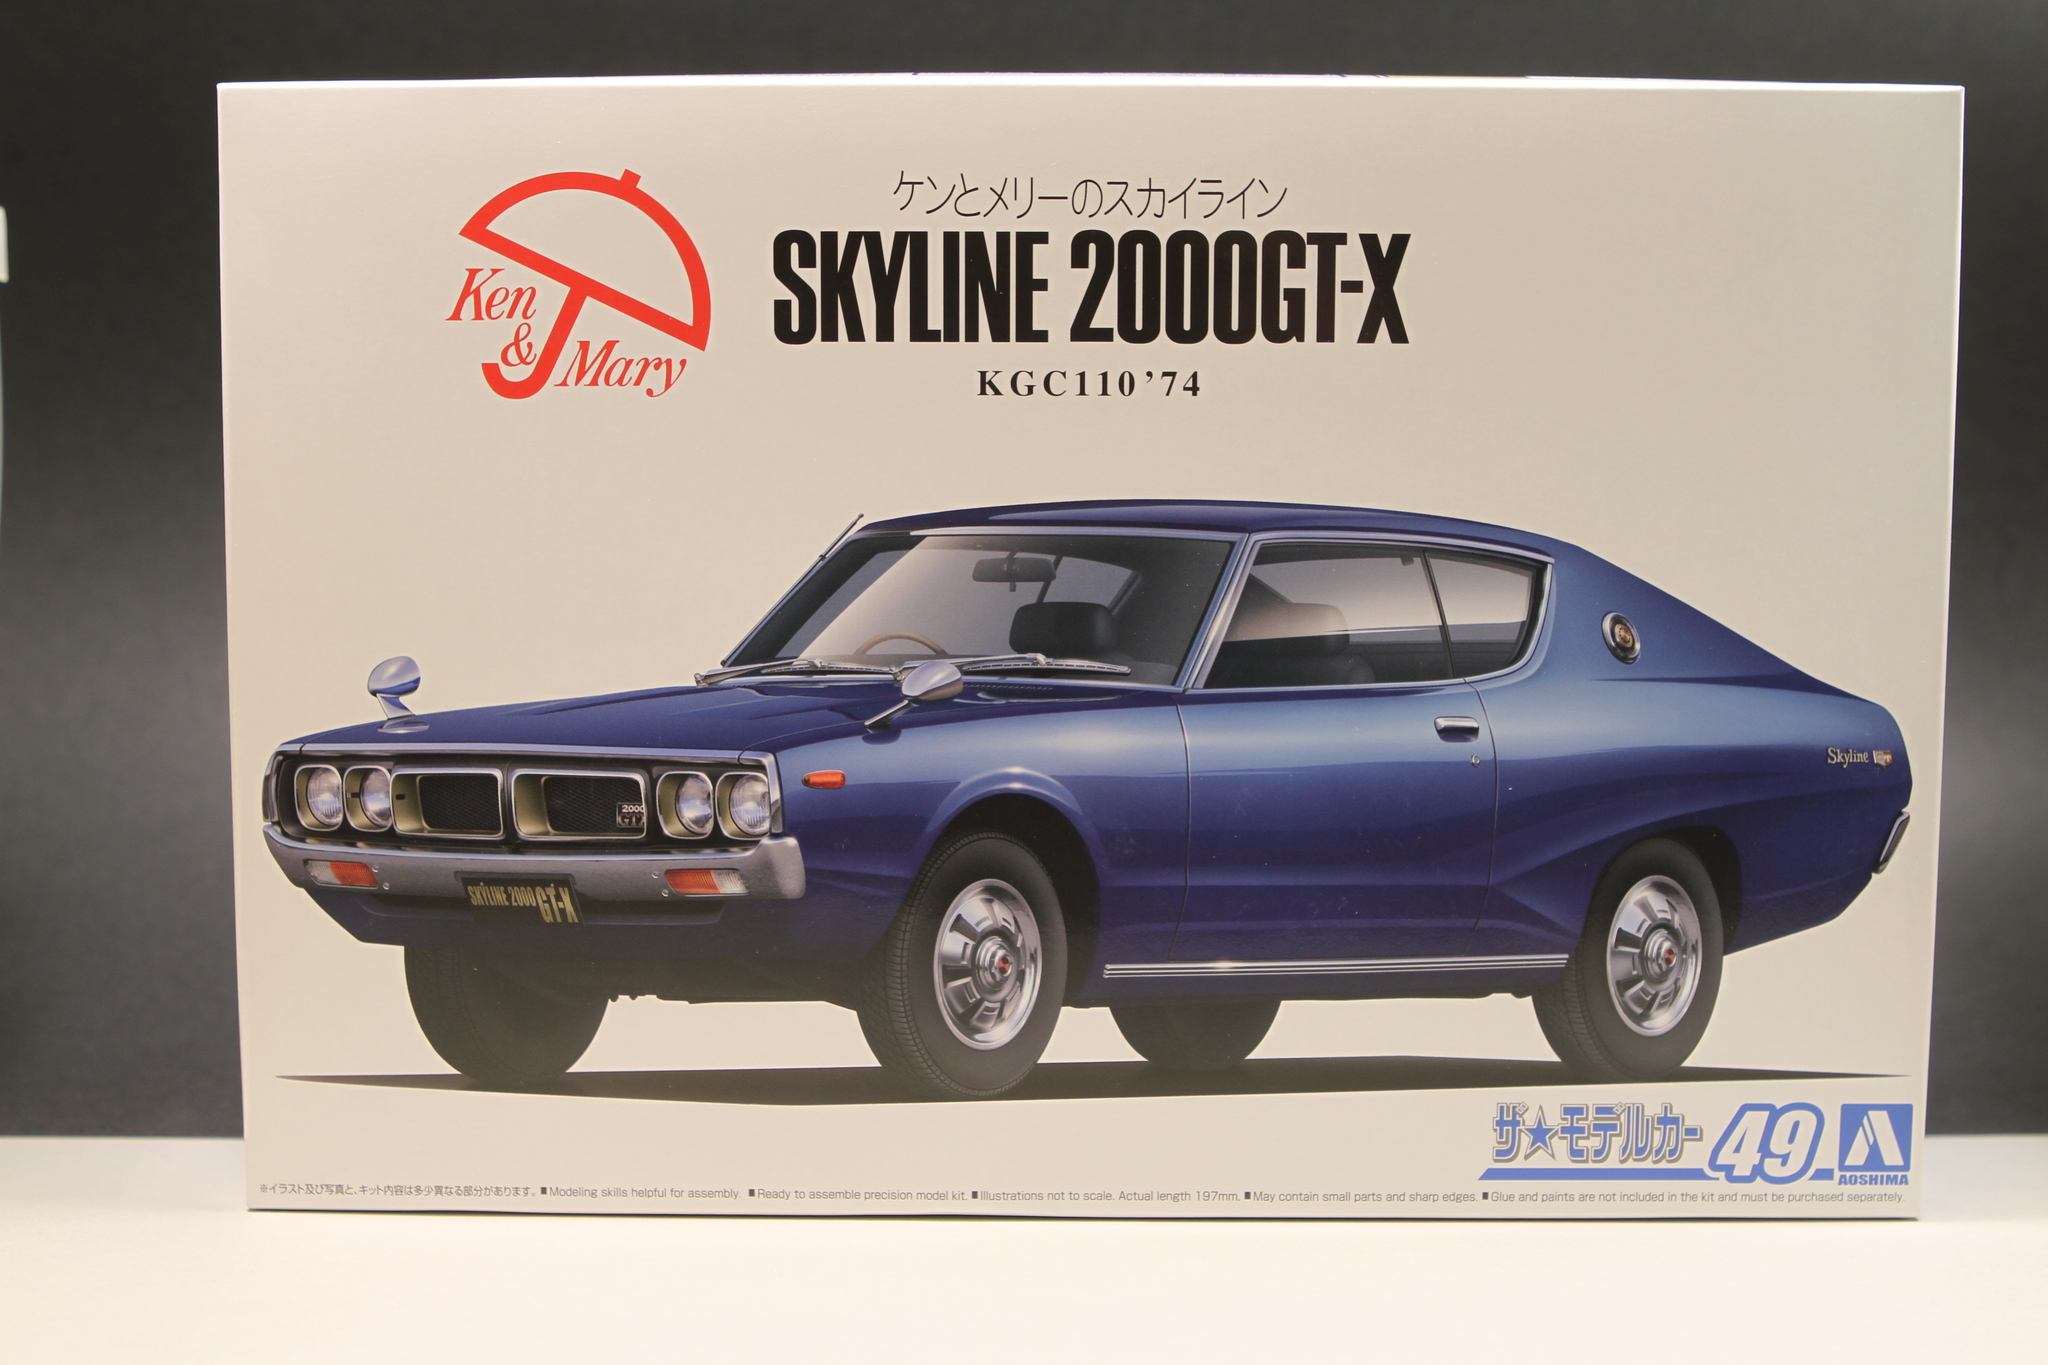 Nissan Skyline KGC110 2000GT-X 1974